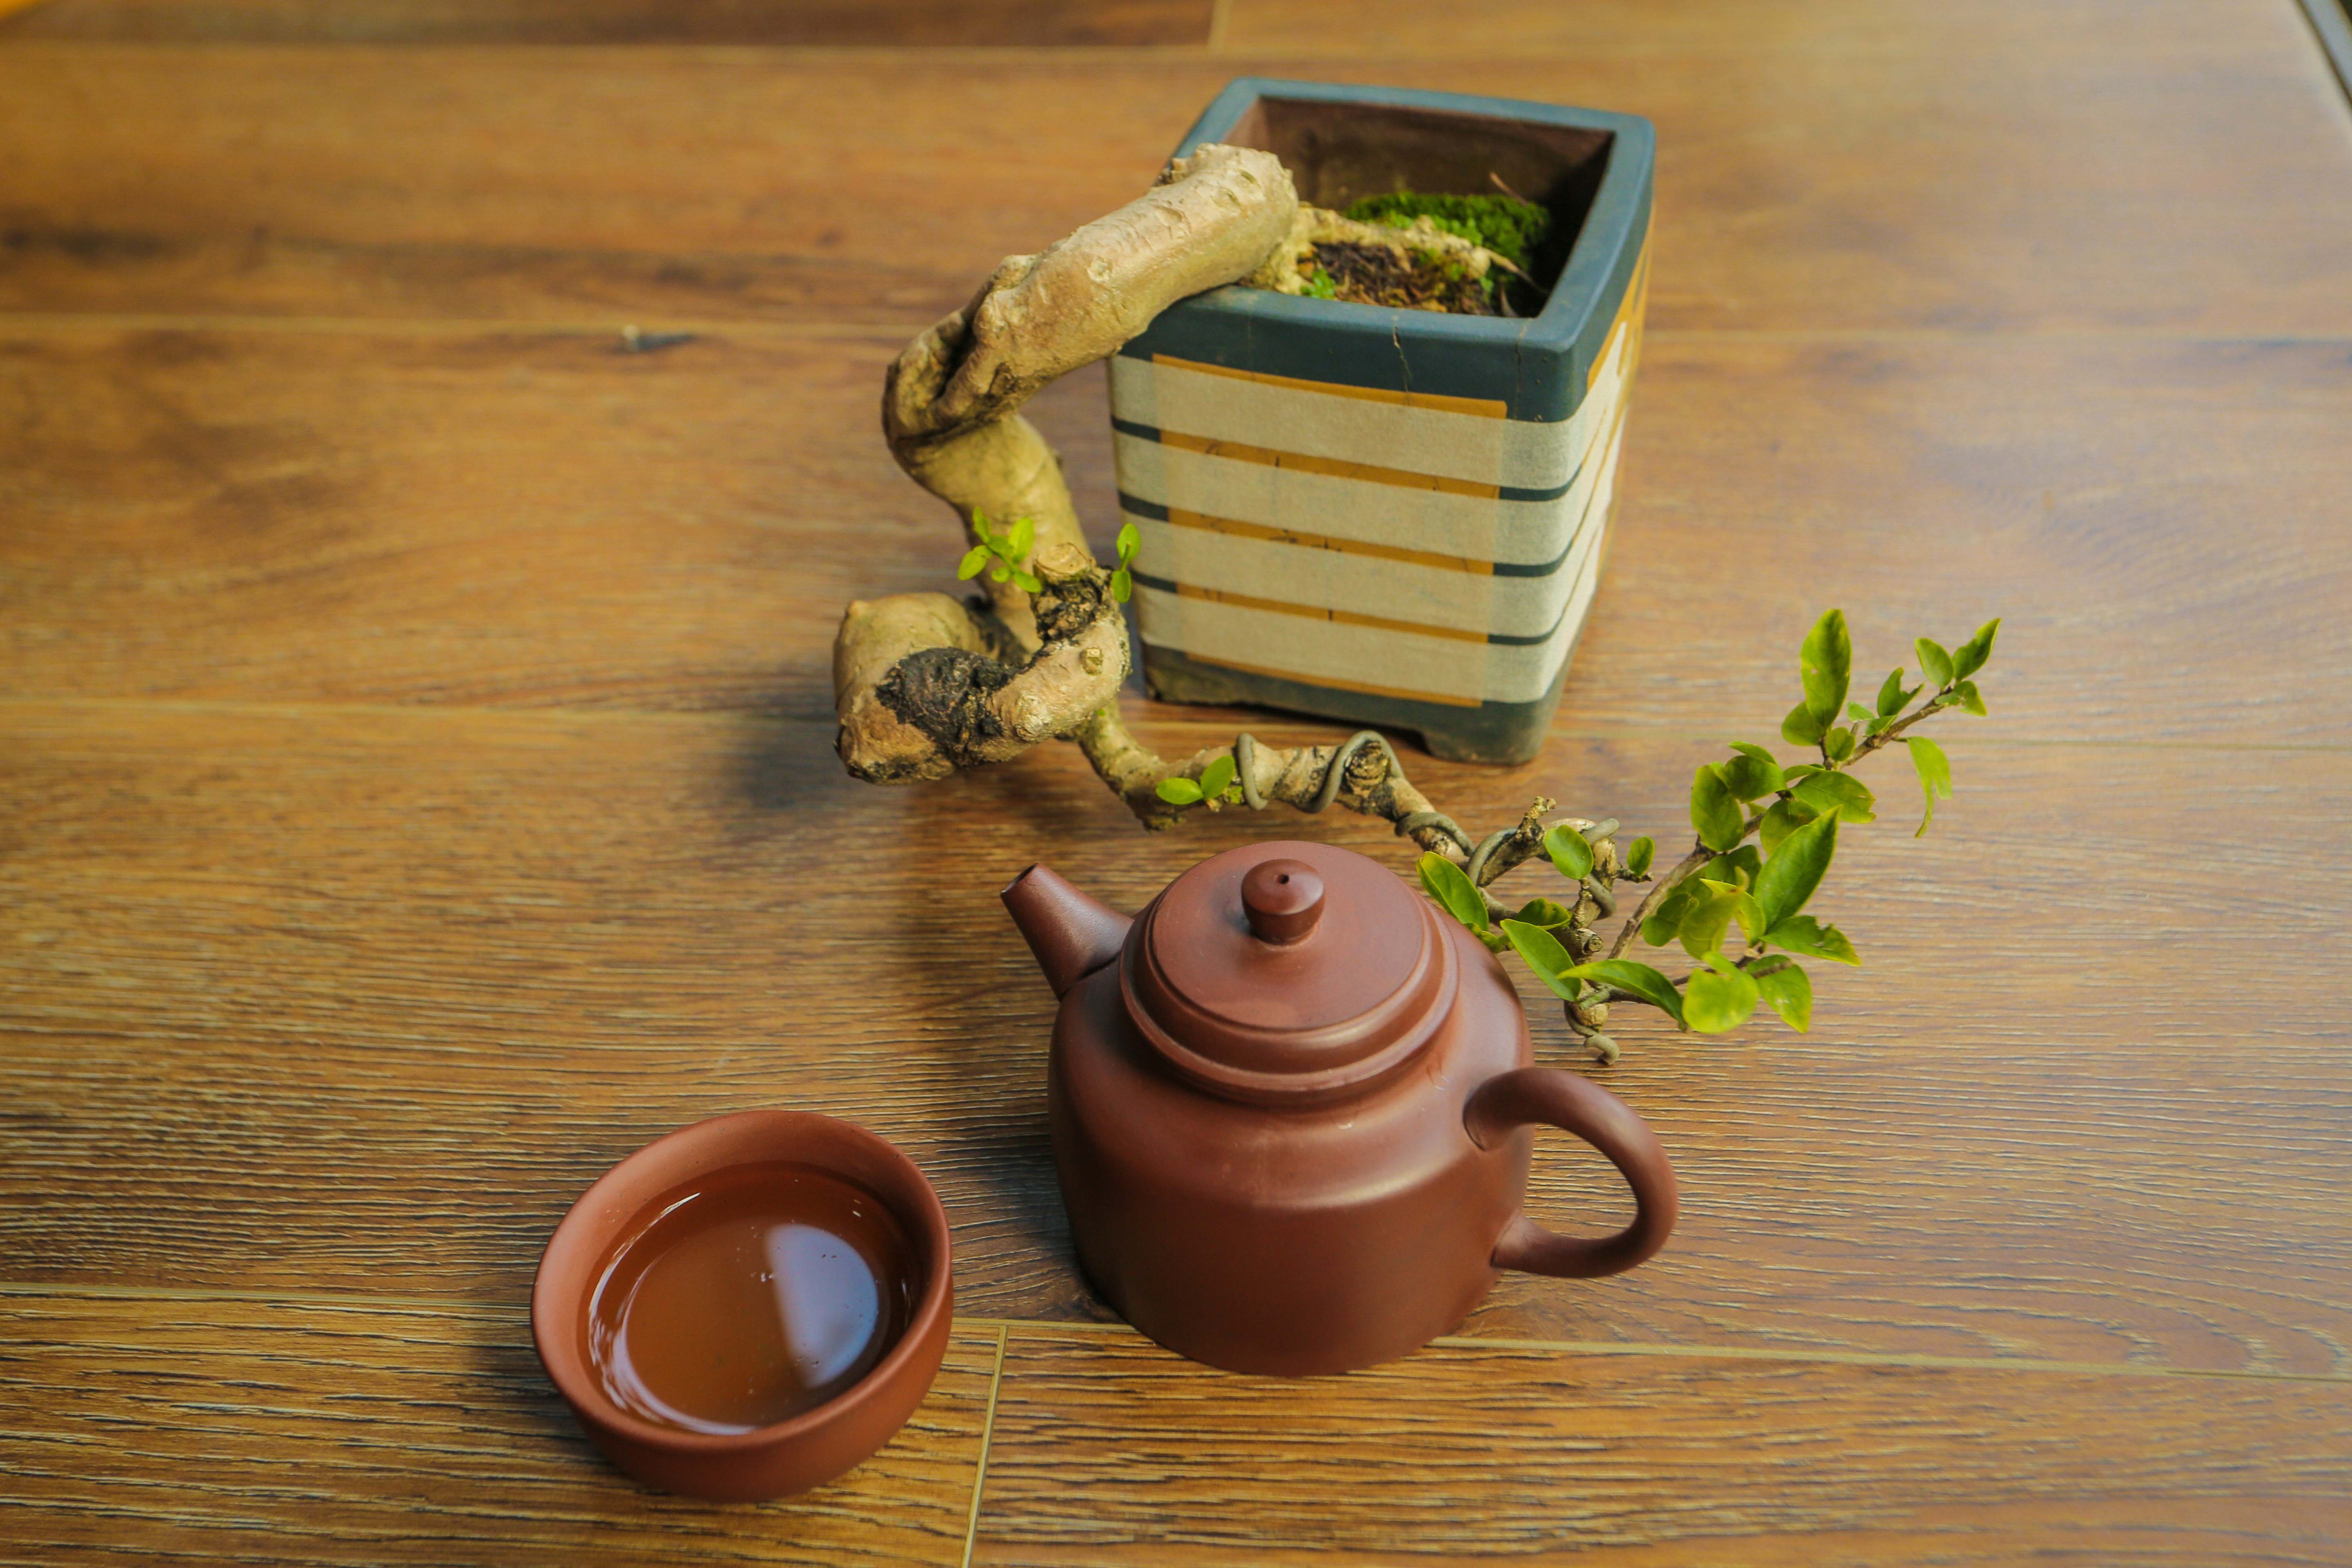 Bộ ấm gốm sứ - Bộ trà đất nung - Bộ ấm trà An Thổ Túc - Bộ ấm trà Nồi Đất